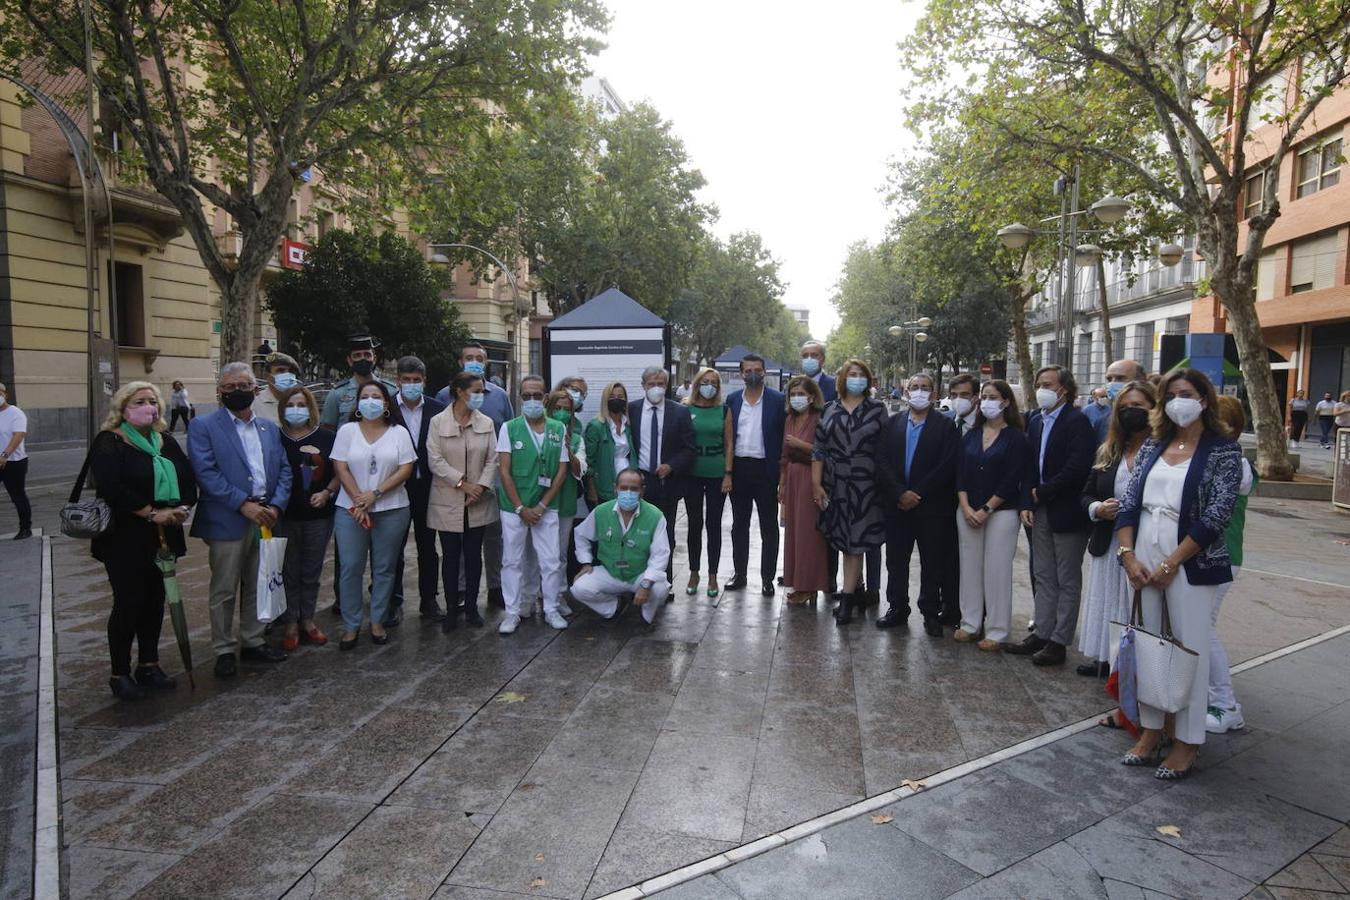 Los actos del día contra el cáncer en Córdoba, en imágenes